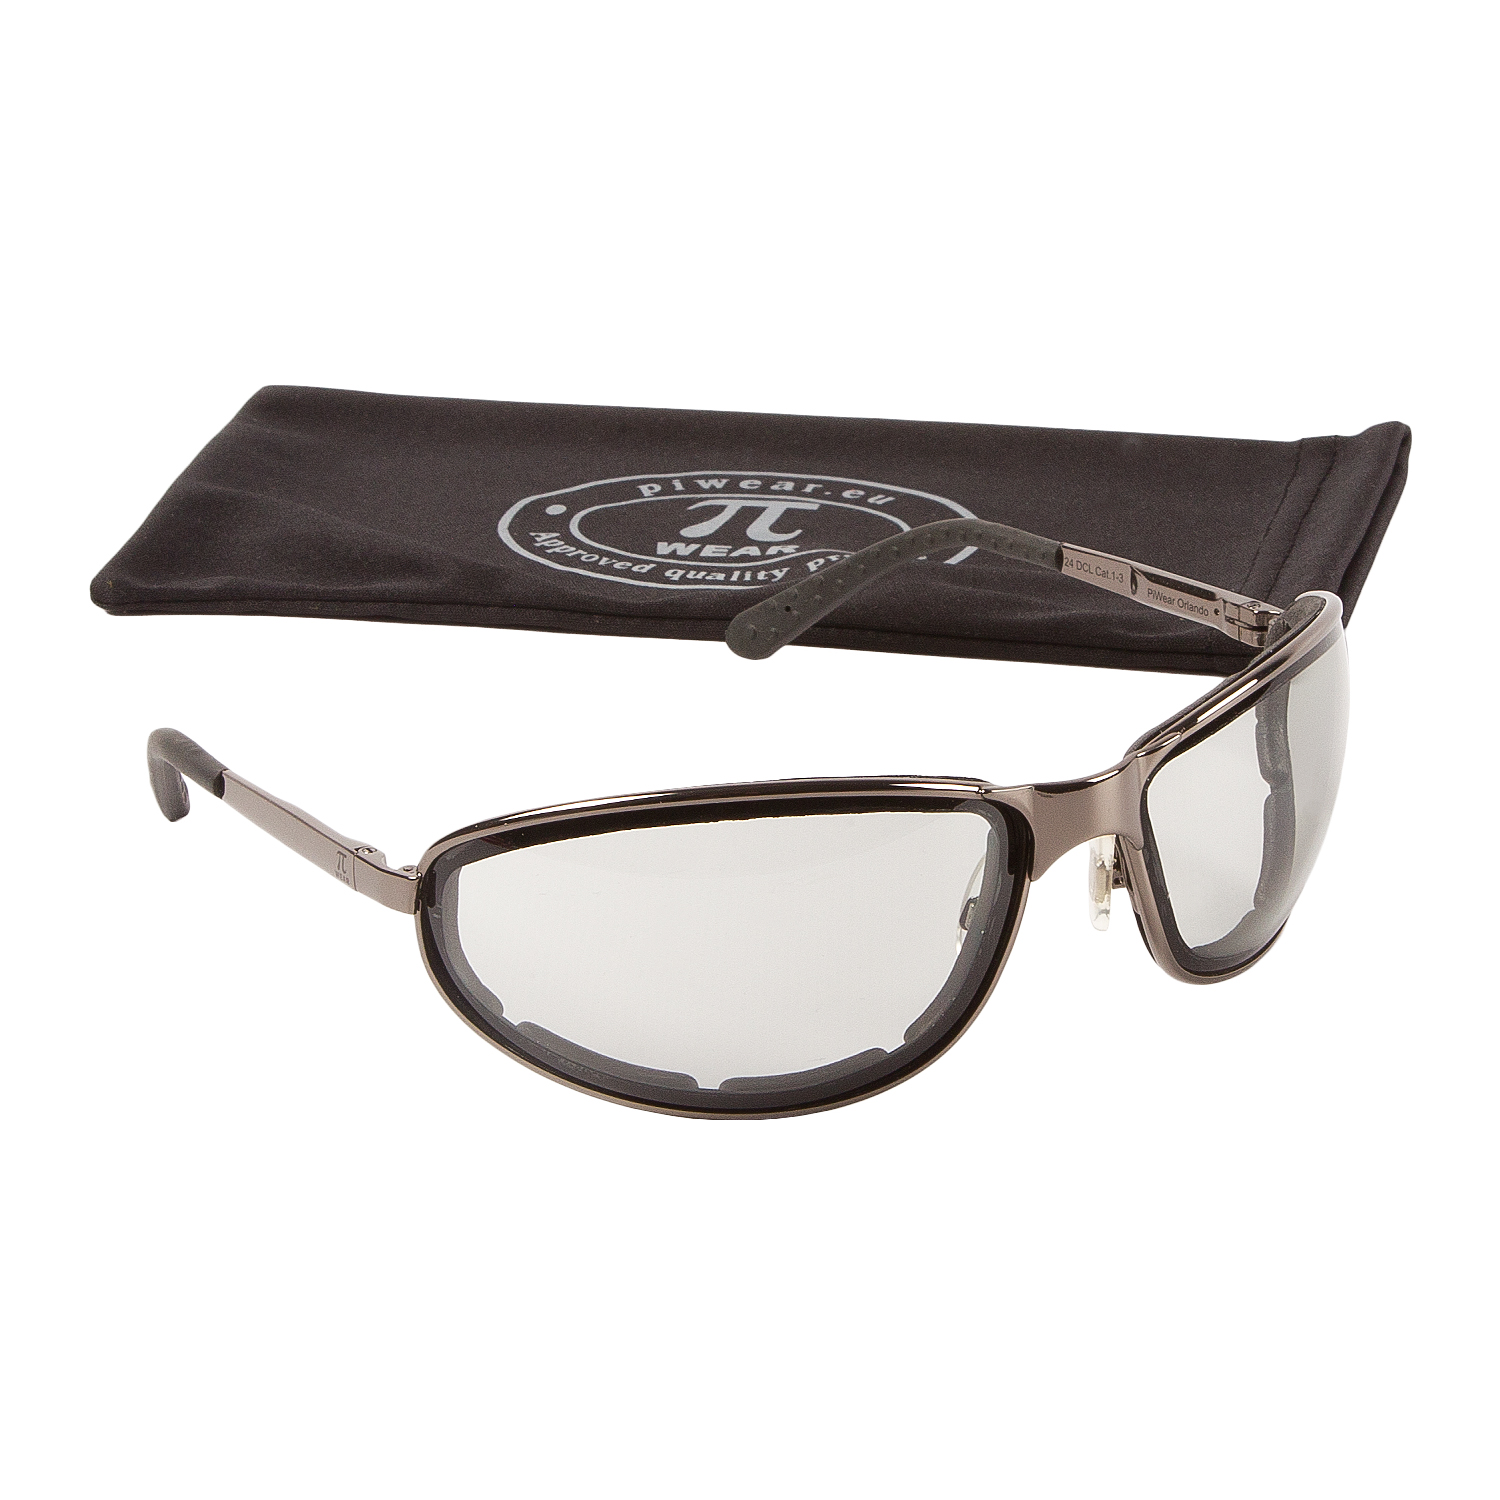 PiWear® Orlando Vollmetall Motorradbrille mit selbsttönenden Gläsern Federscharnieren Silber/Chrome 